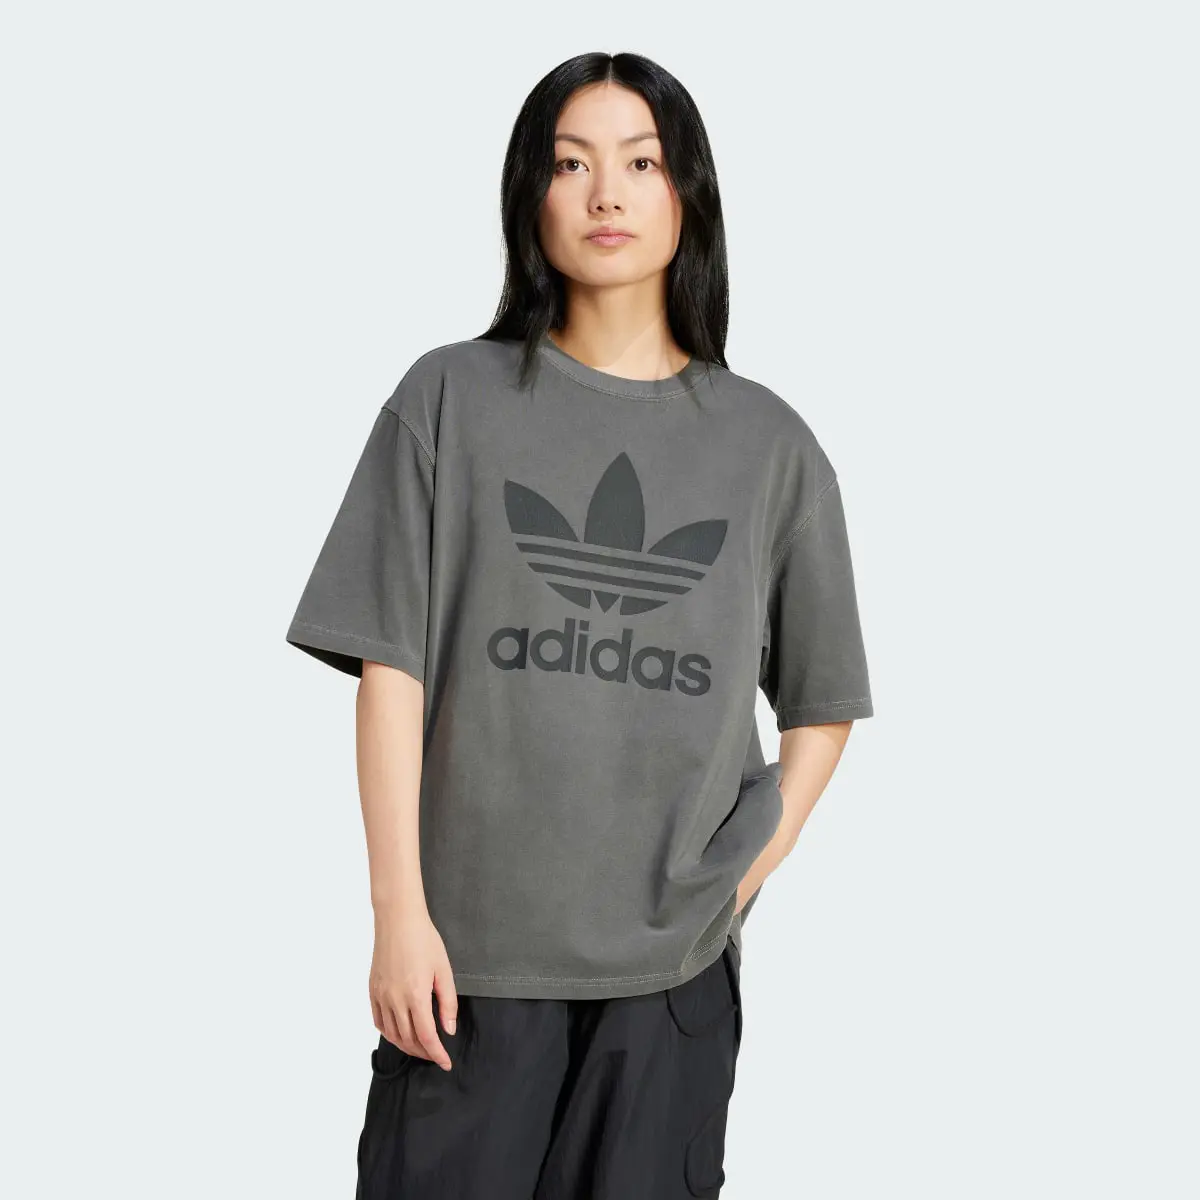 Adidas T-shirt Trèfle délavé. 2